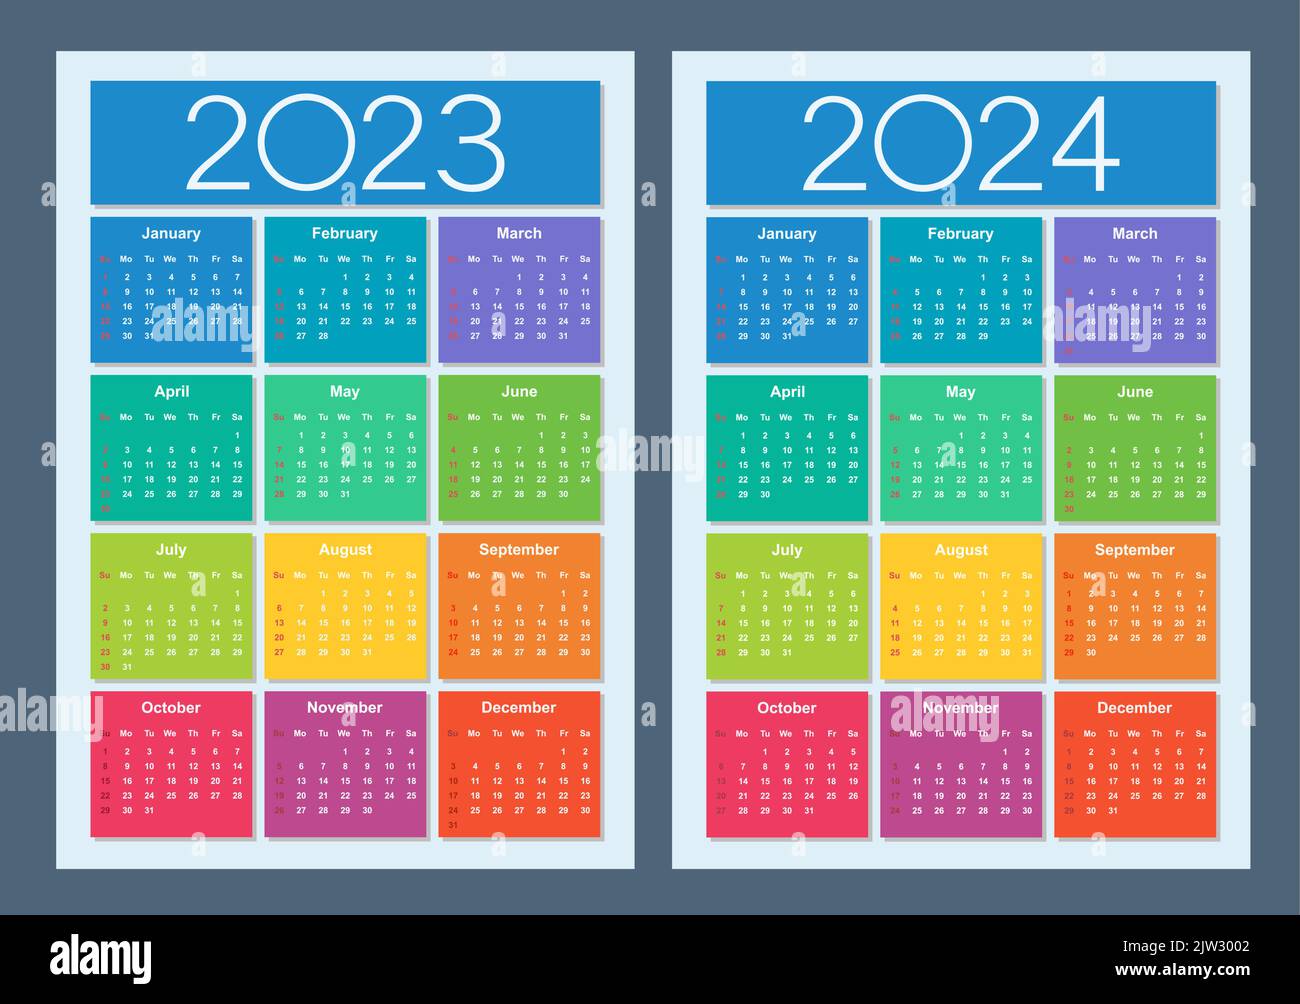 Calendrier coloré pour 2023, 2024 ans. La semaine commence le dimanche